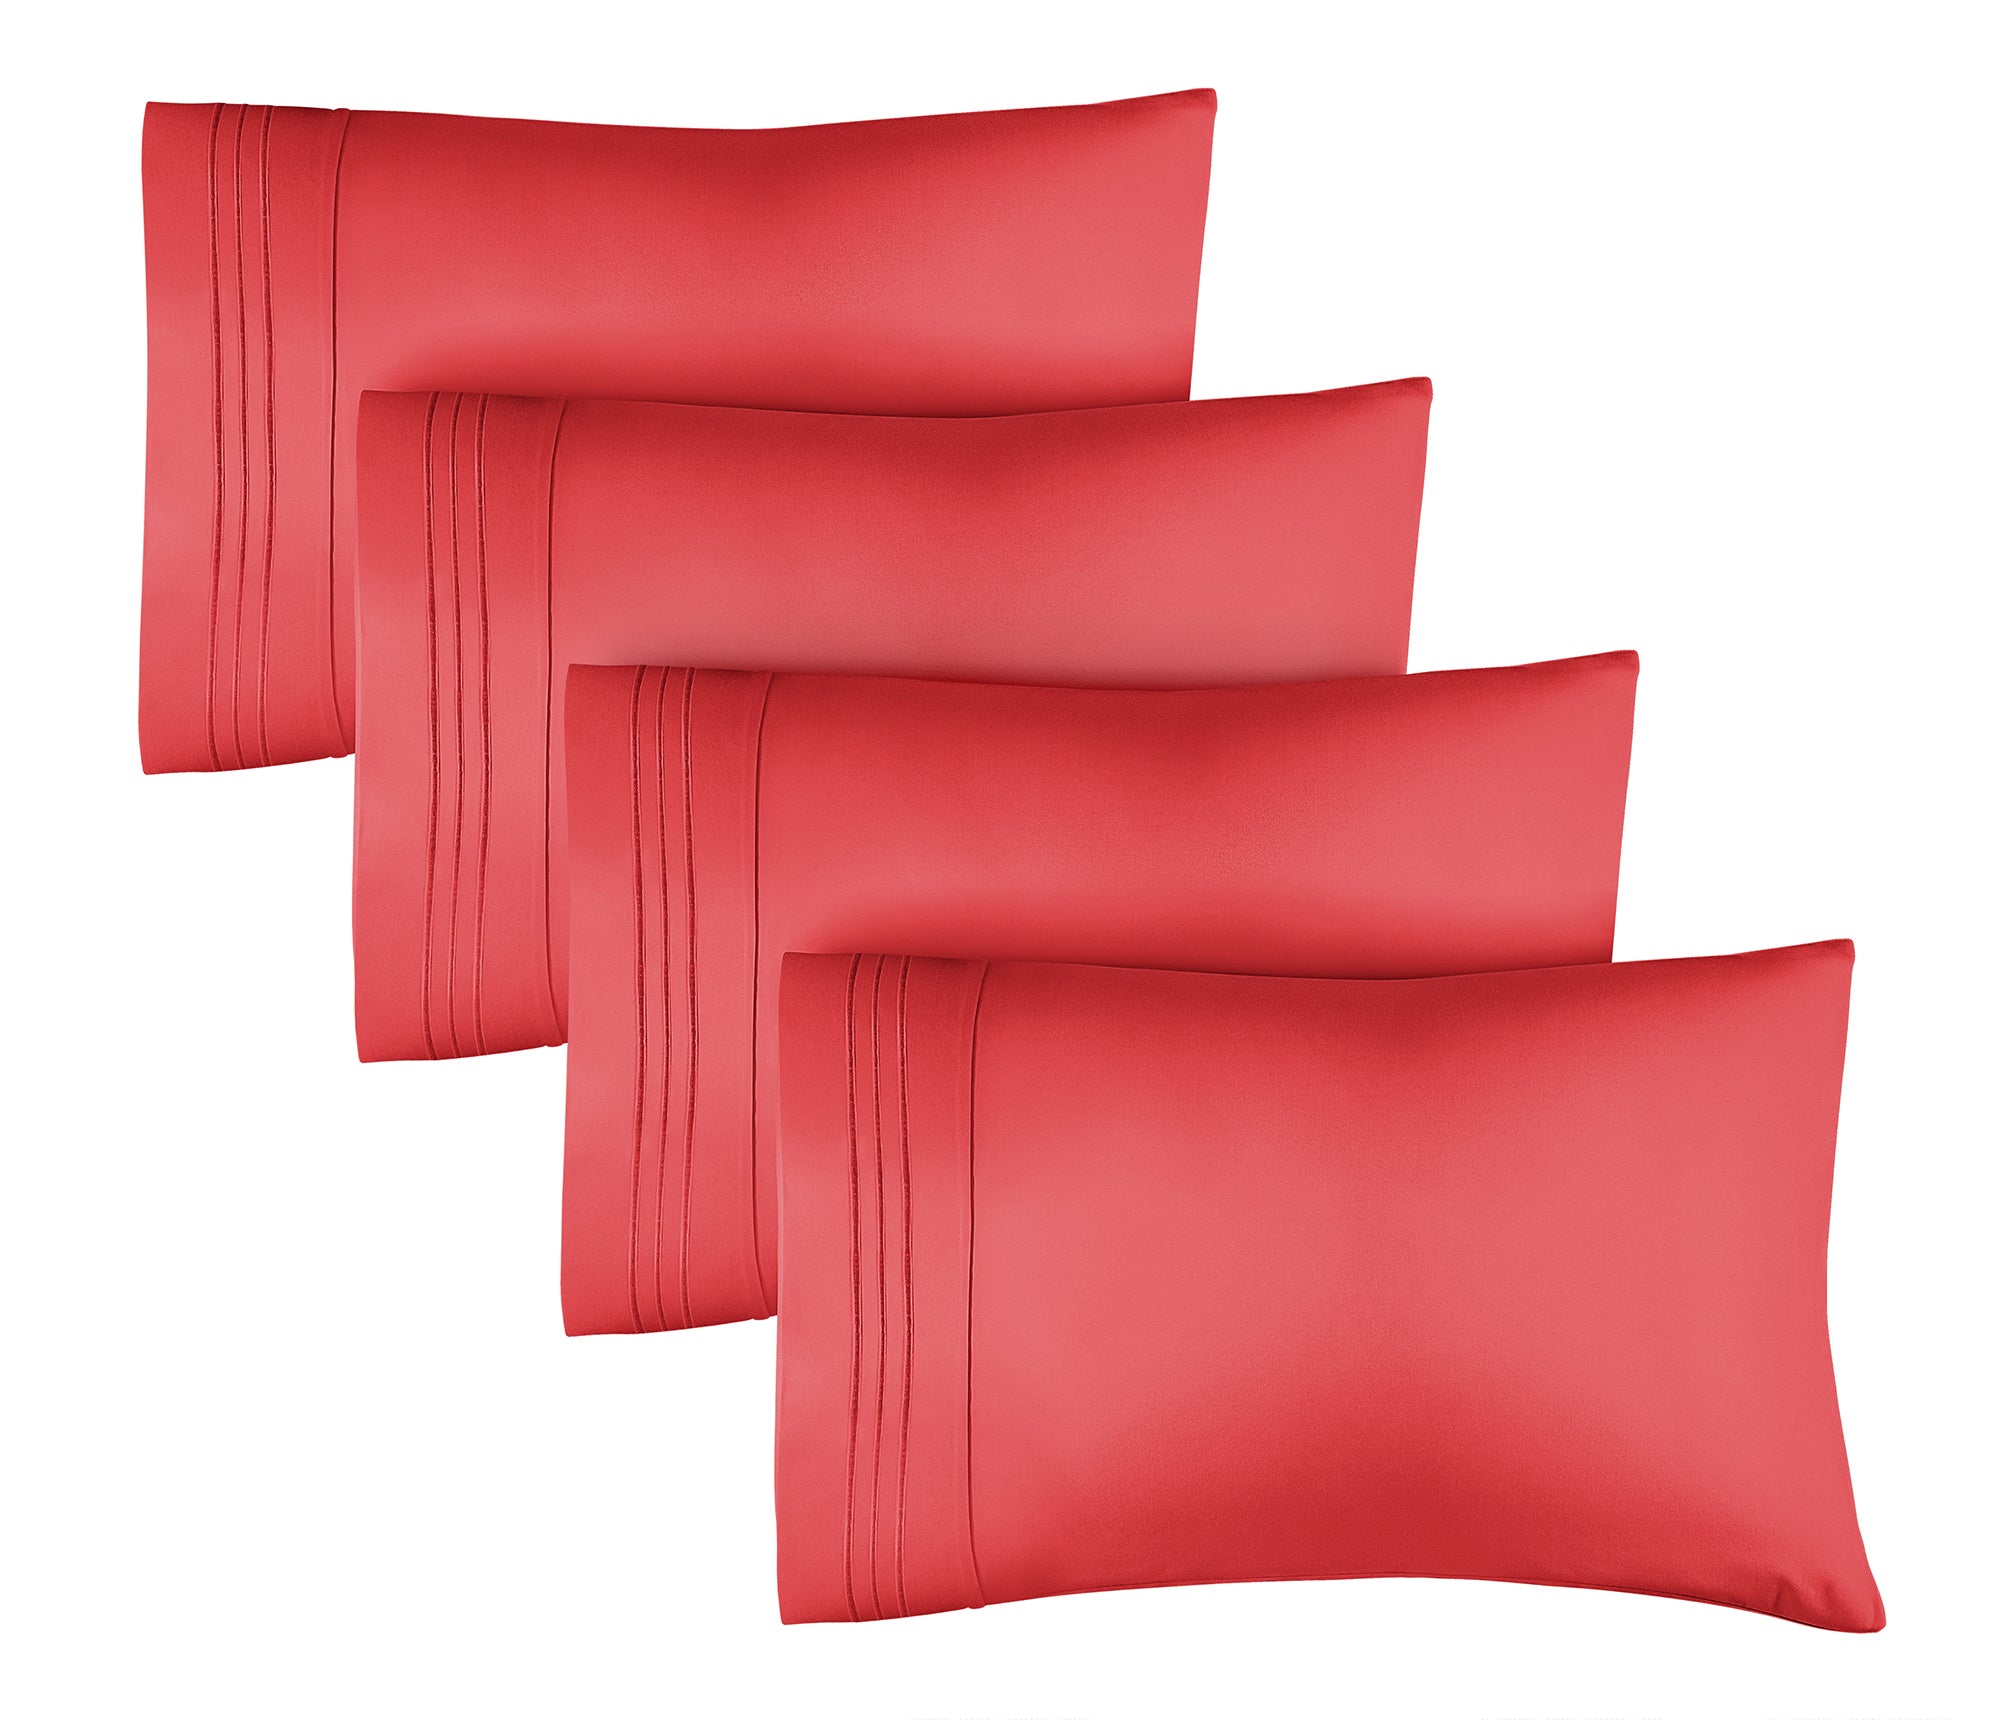 tes 4 Pillowcase Set - Red